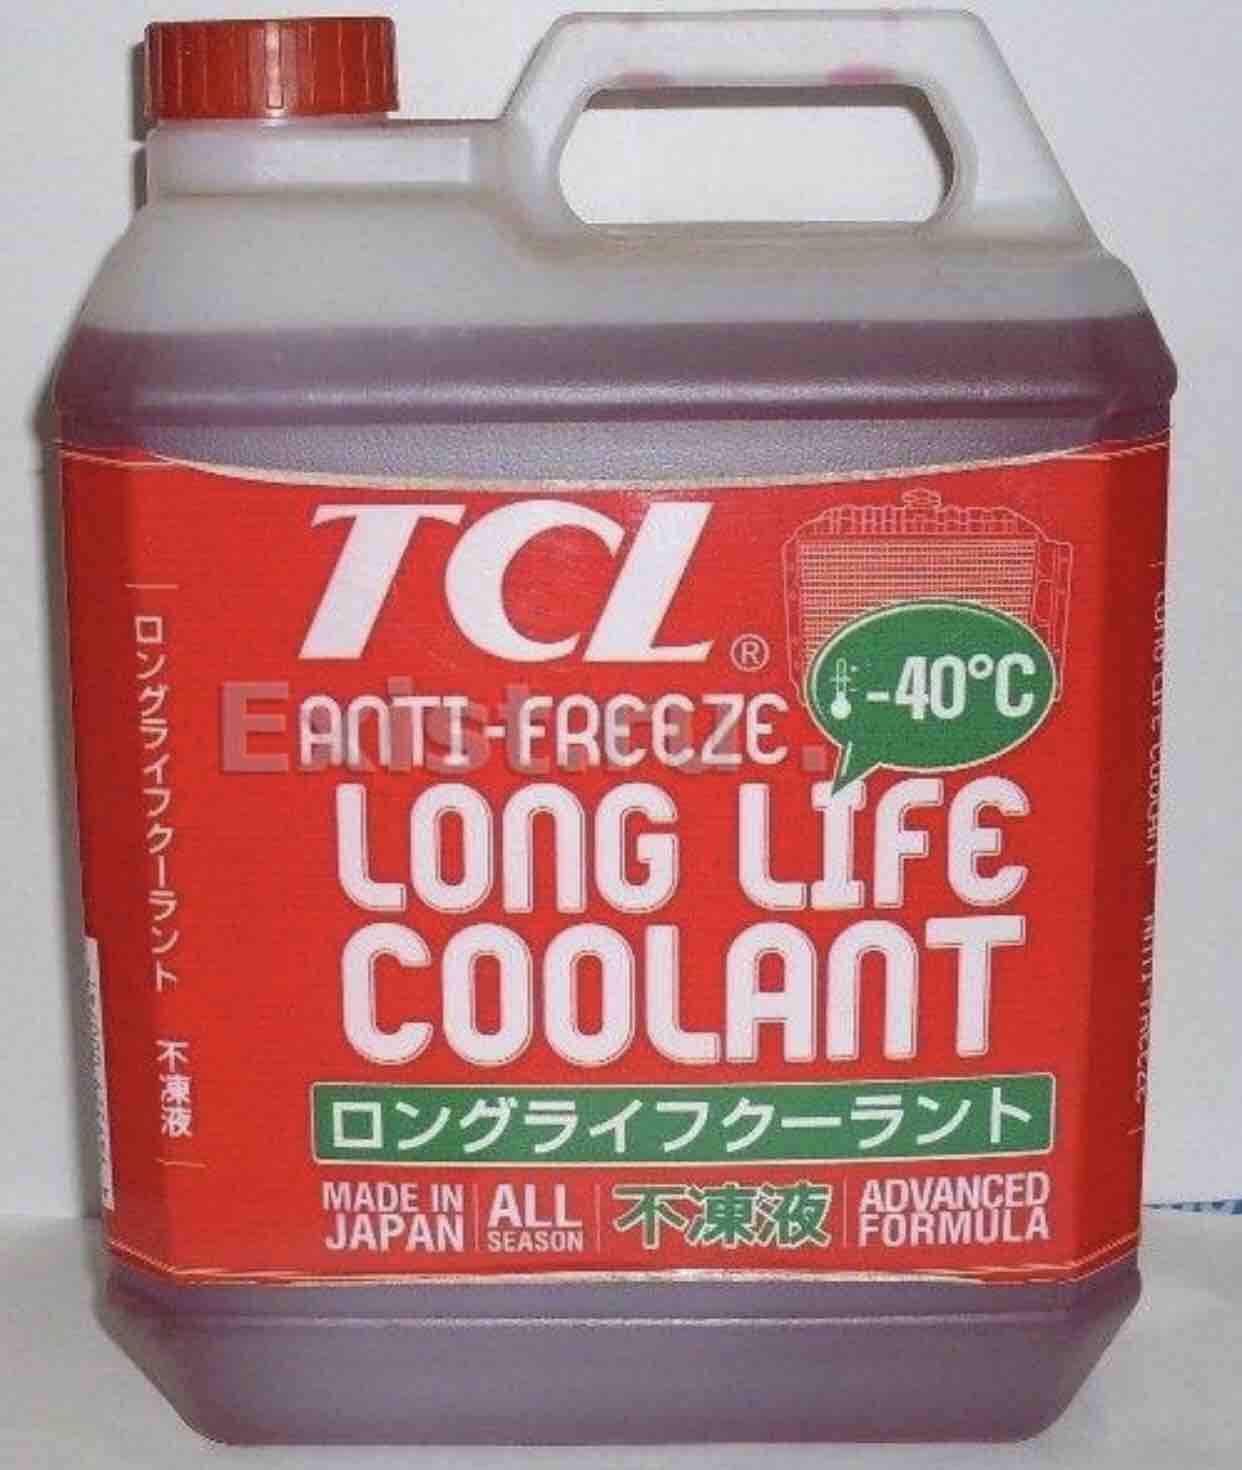 Tcl long life. Антифриз TCL long Life Coolant -40 c. Антифриз long Life Coolant красный. Антифриз TCL long Life Coolant LLC, зеленый. TCL llc01236.